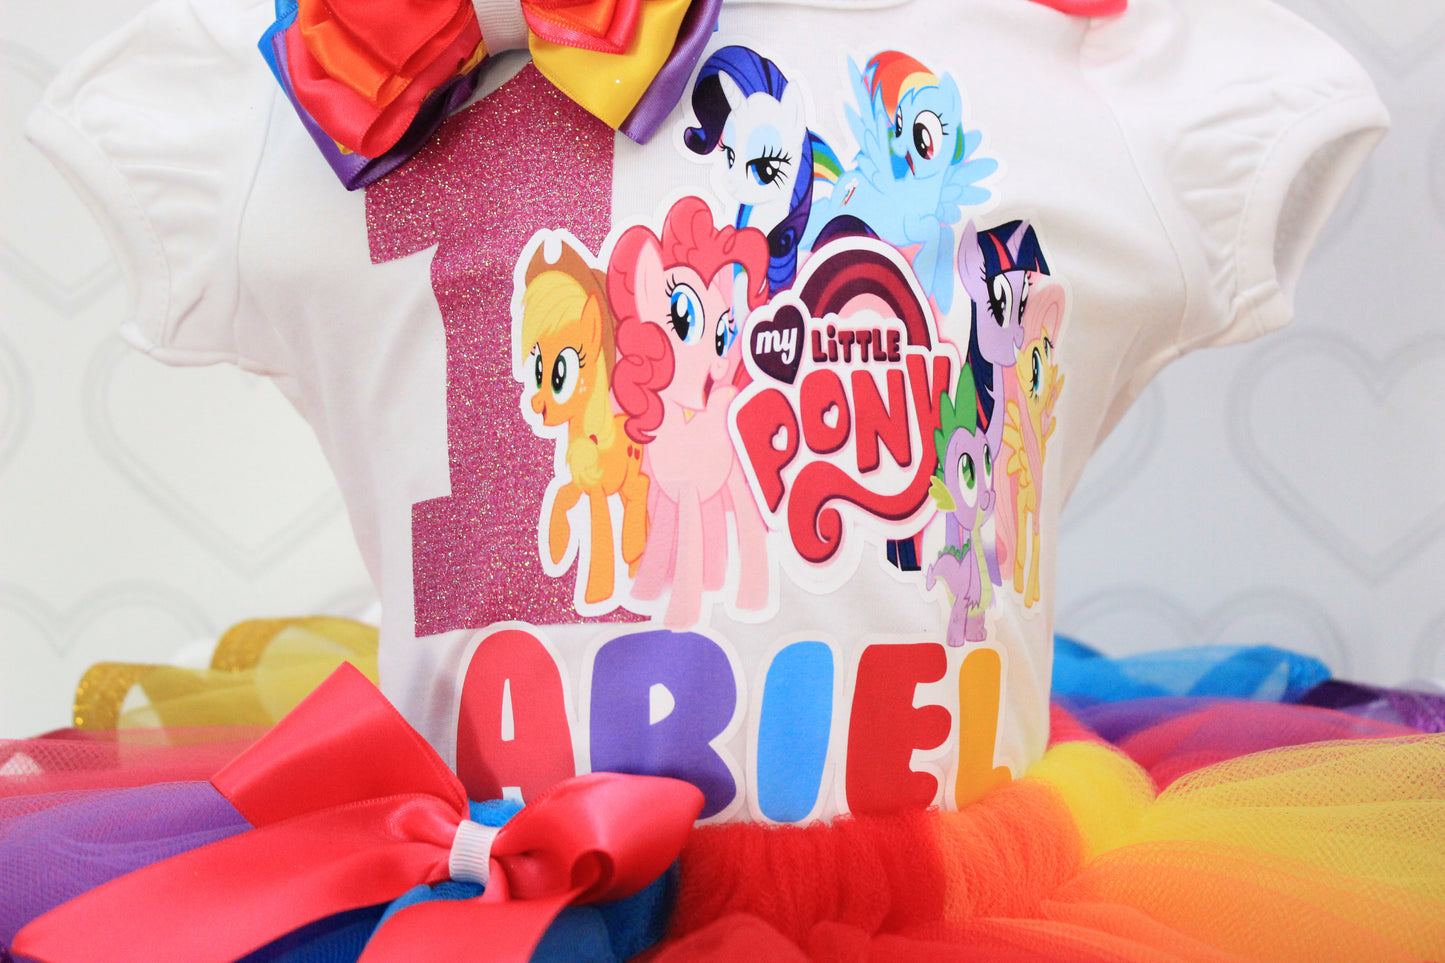 My little pony tutu set- My little pony outfit-My little pony birthday outfit-My little pony birthday